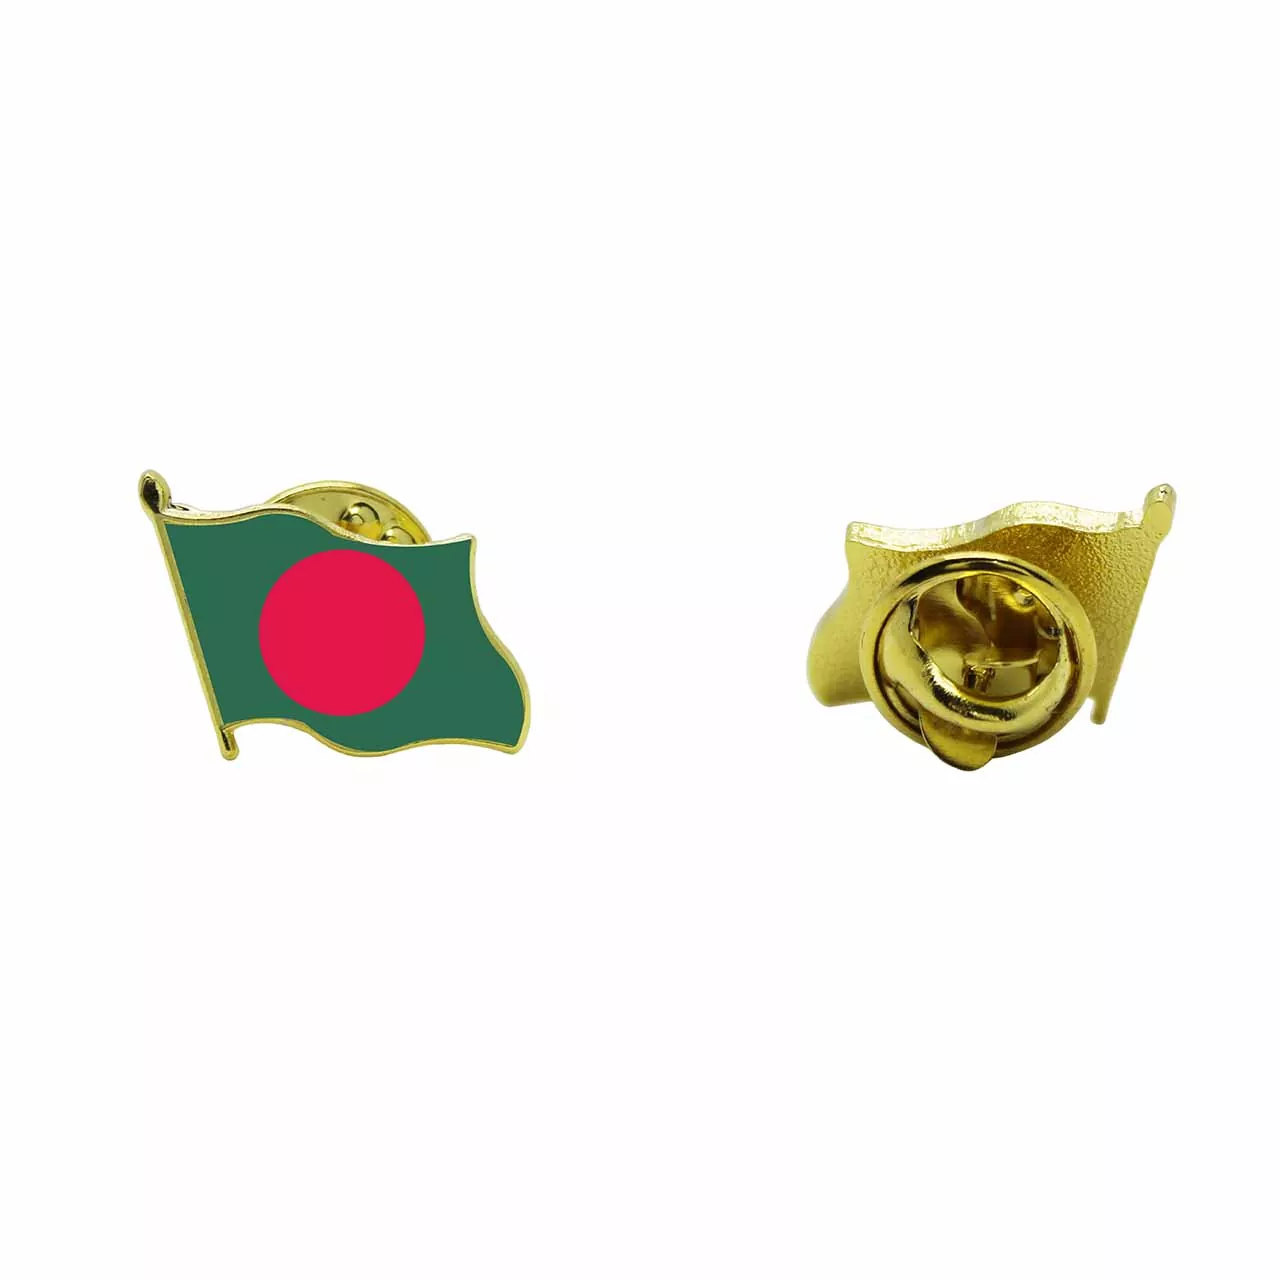 Bangladesh National Flag Lapel Pins